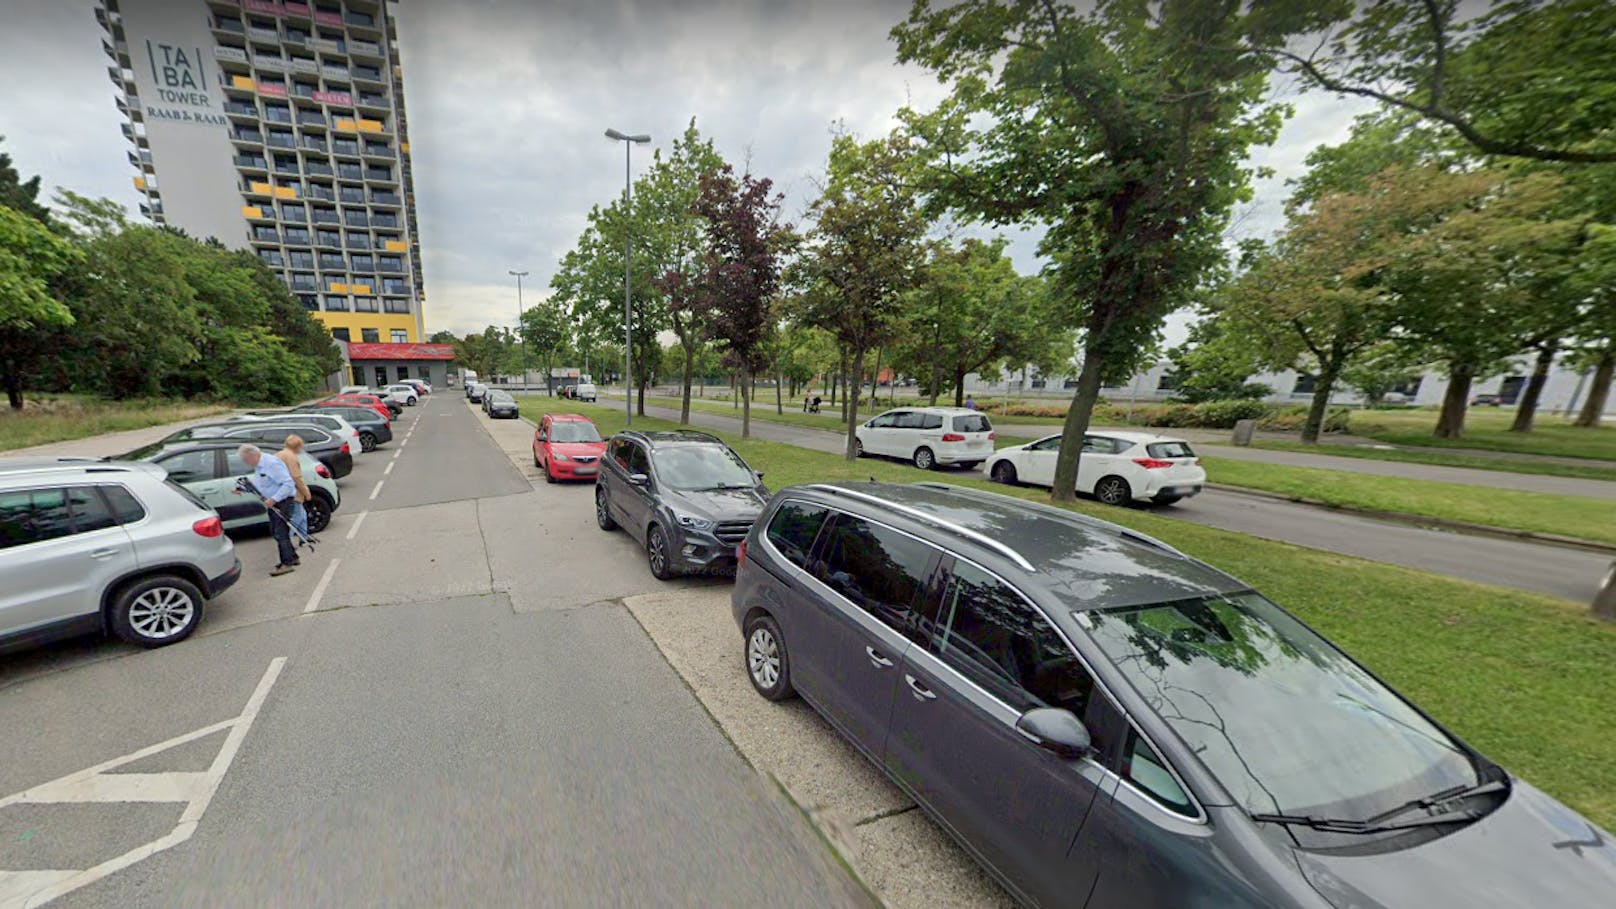 Top Lage am Kurpark Oberlaa in Wien-Favoriten: Hier wird ein neues Wohngebiet mit hunderten Wohnungen geplant. Die Nachbarn sind nicht besonders erfreut über die Pläne.